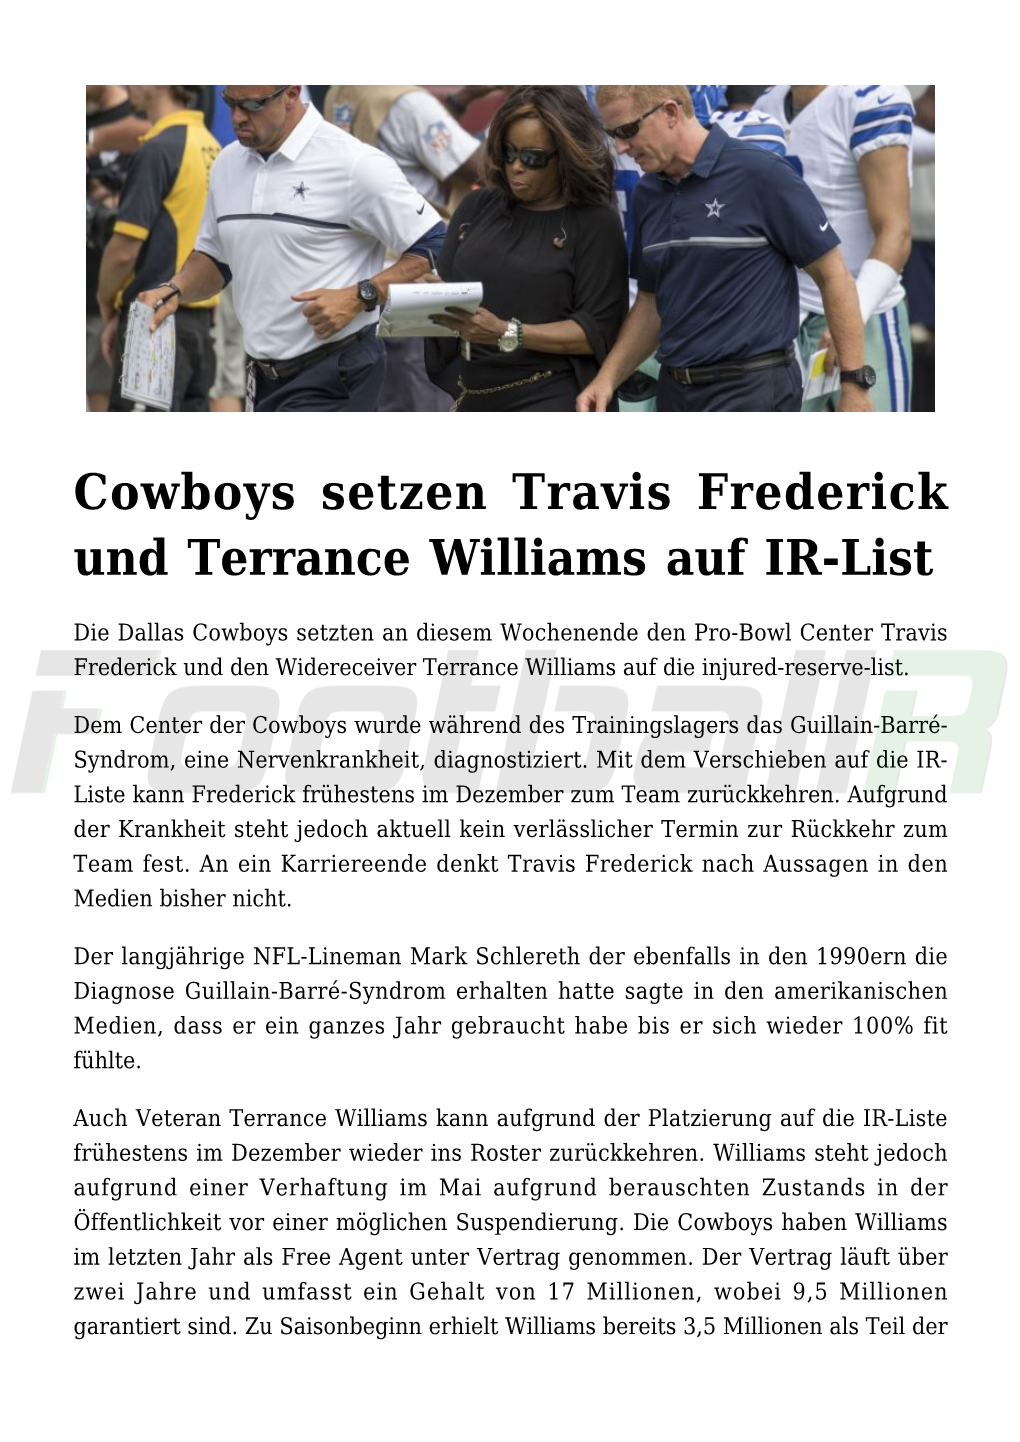 Cowboys Setzen Travis Frederick Und Terrance Williams Auf IR-List